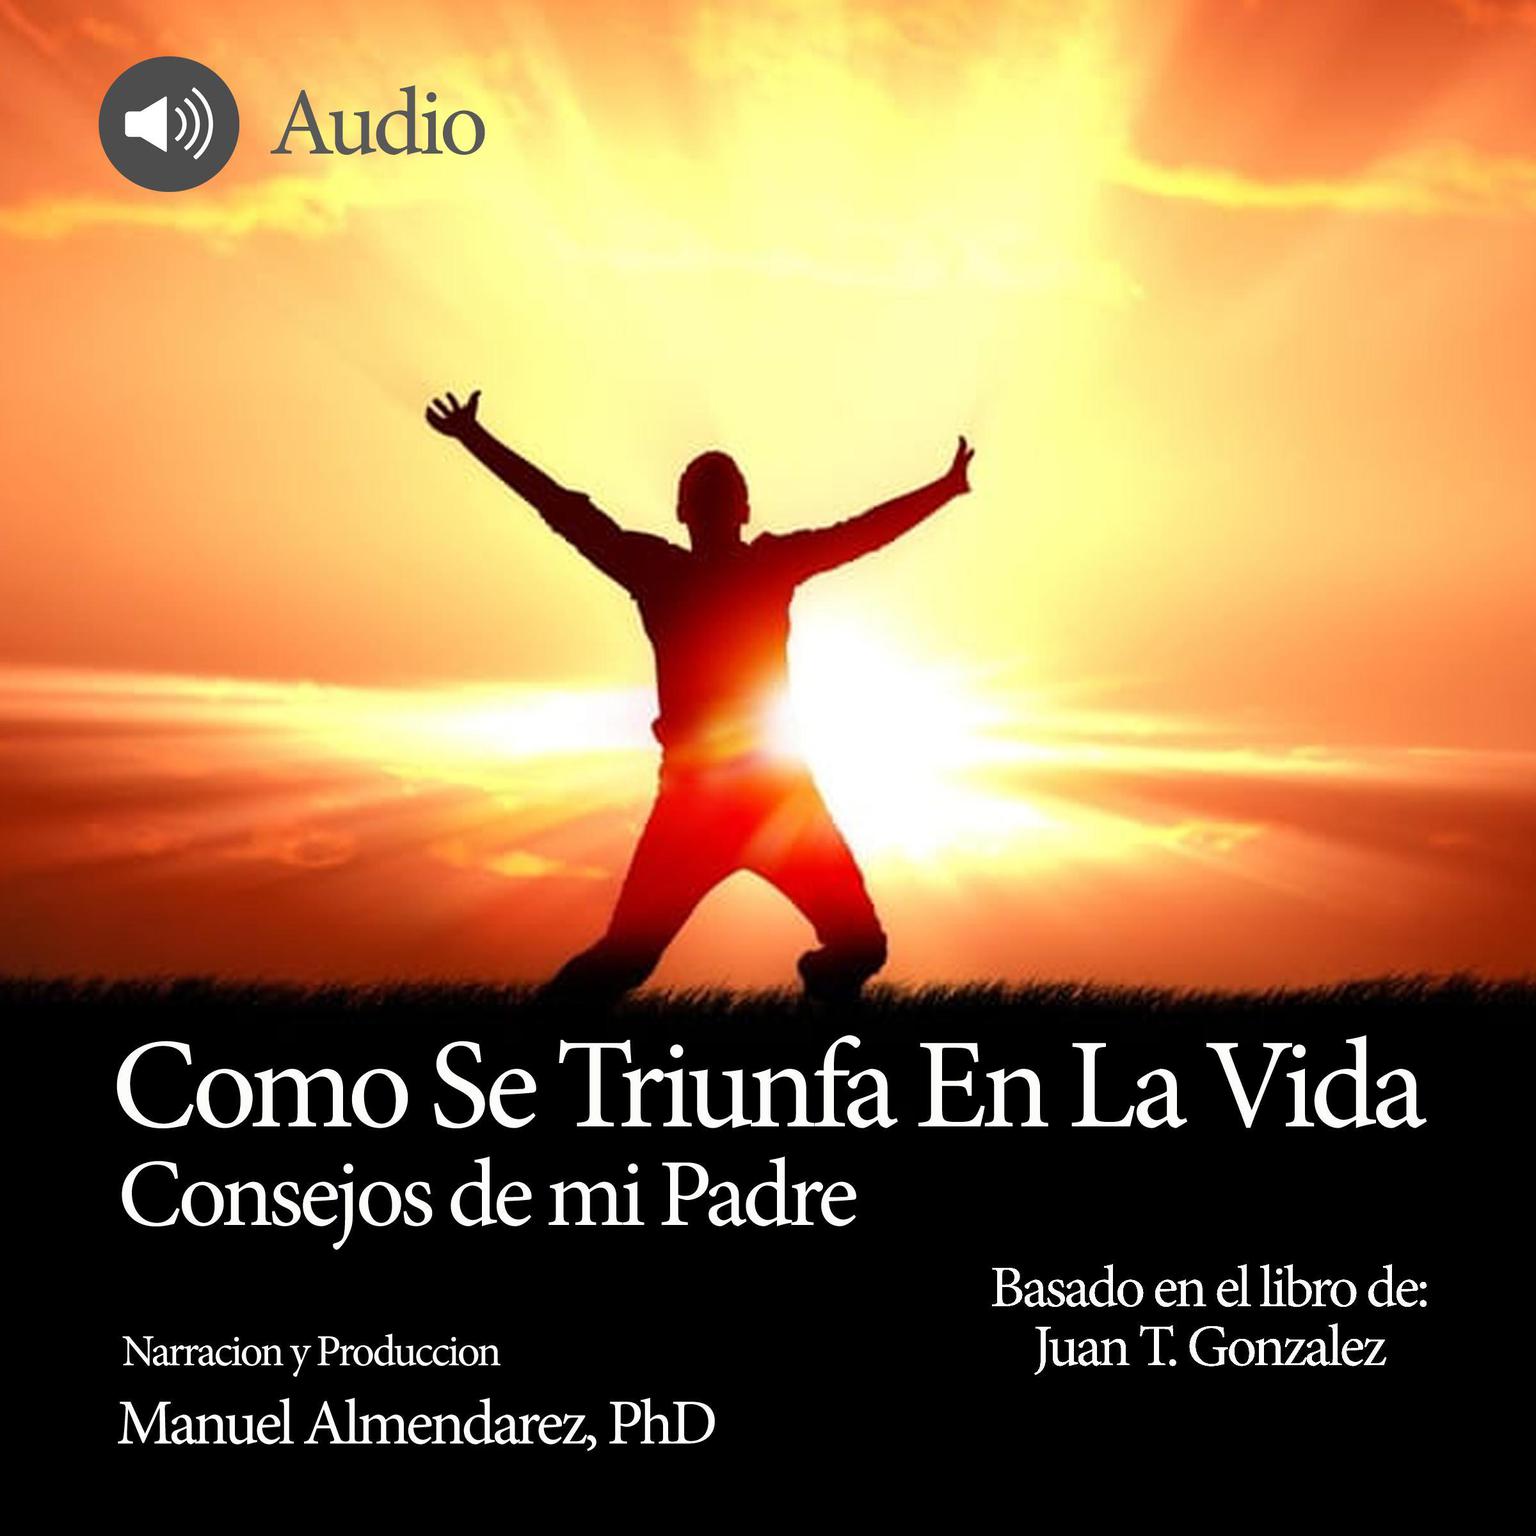 Como Se Triunfa En La Vida Audiobook, by Juan T. Gonzalez